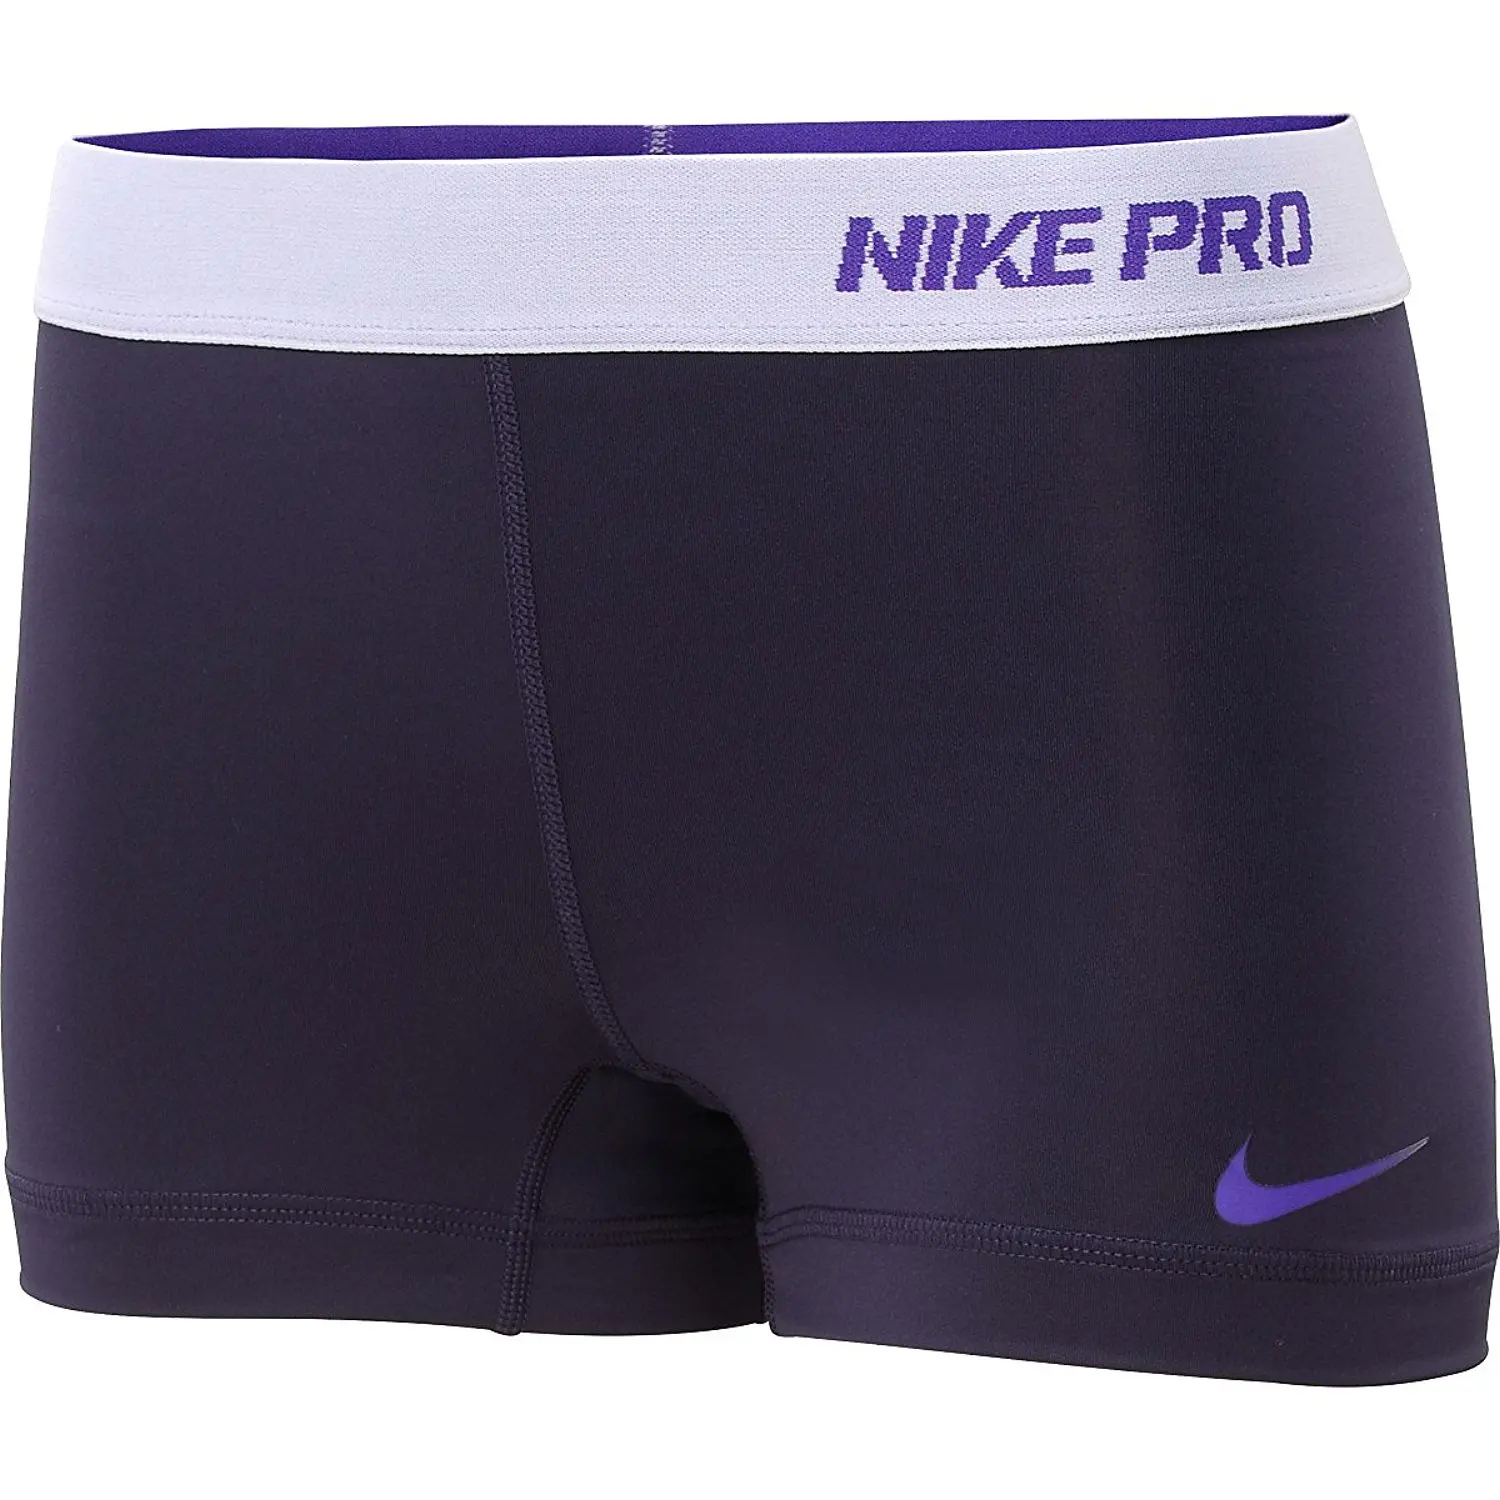 nike pro 2.5 inch shorts